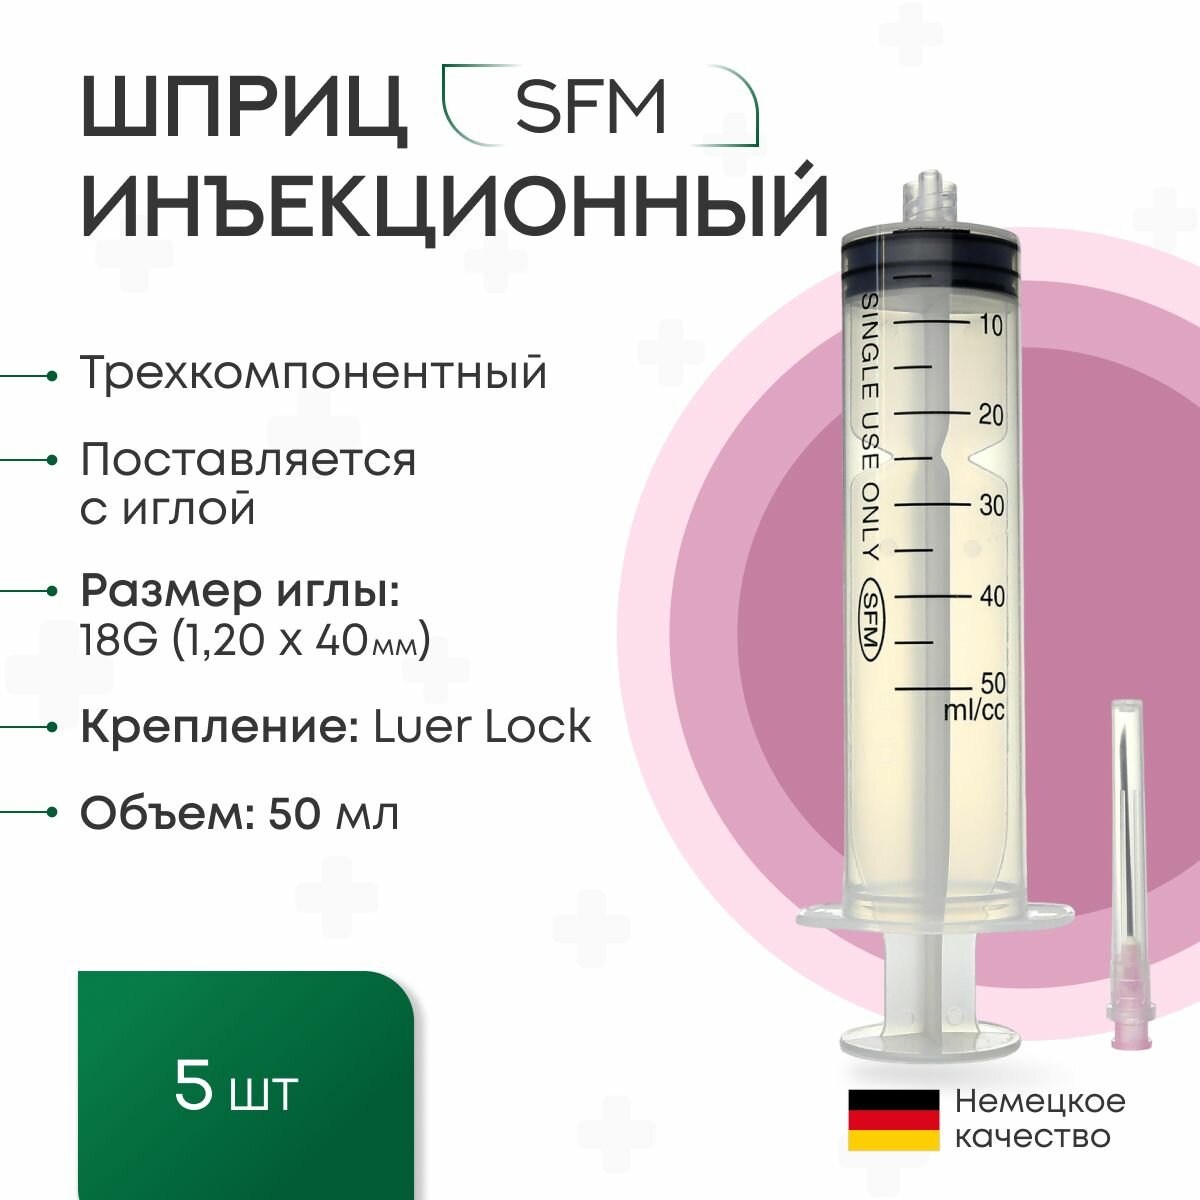 Шприц 50 мл. (3-х) SFM, Германия одноразовый стерилизованный с иглой 18G (LUER LOCK) (блистер) 5 шт.